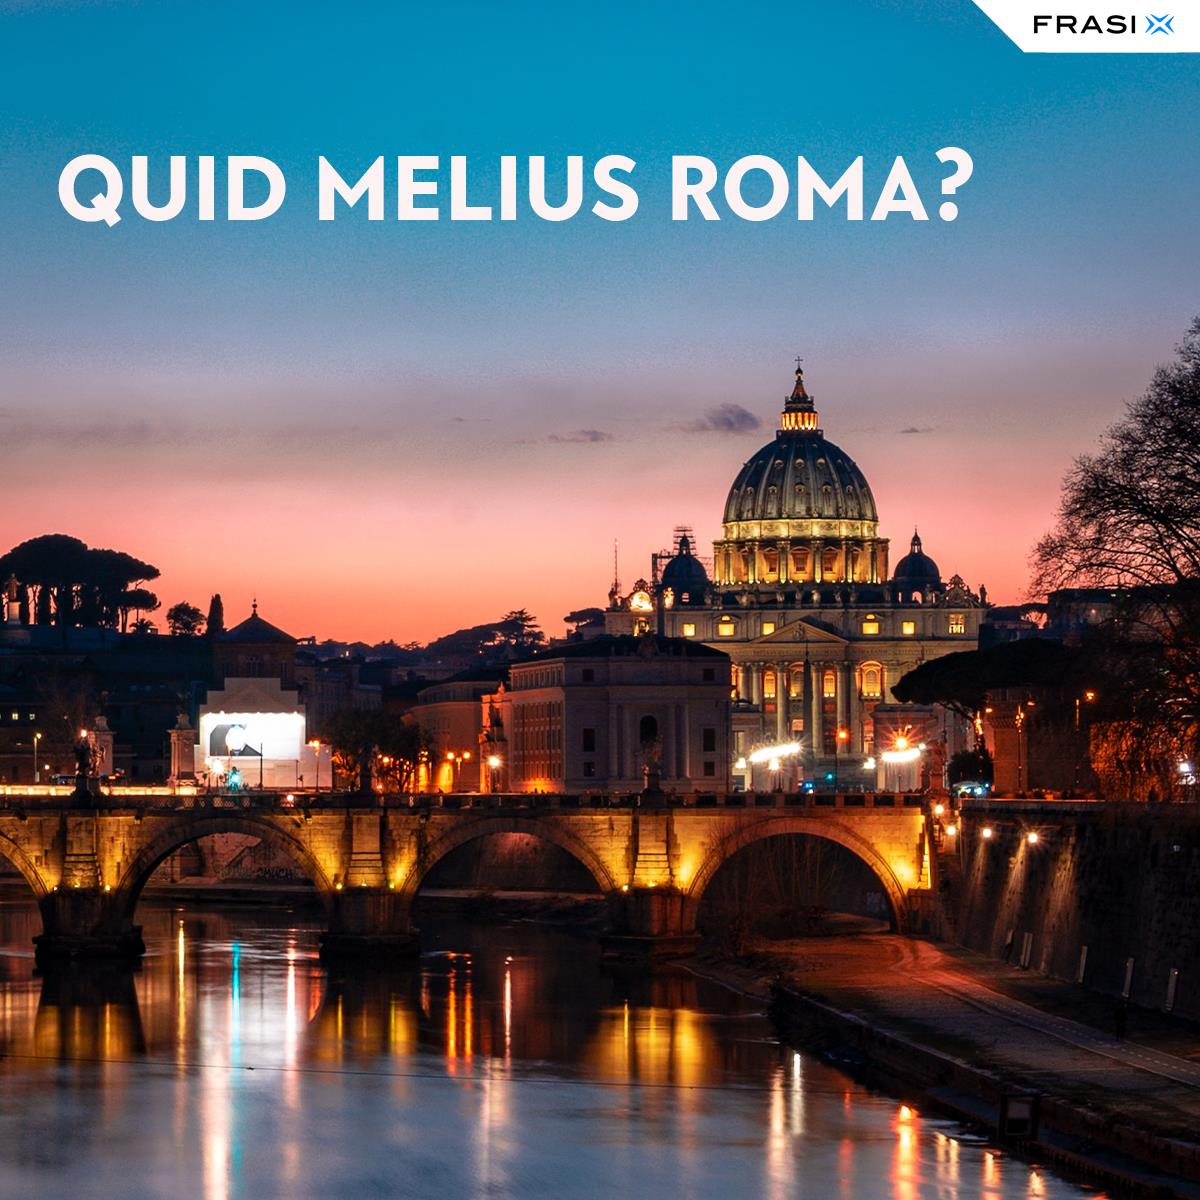 Frasi in latino Quid melius Roma?